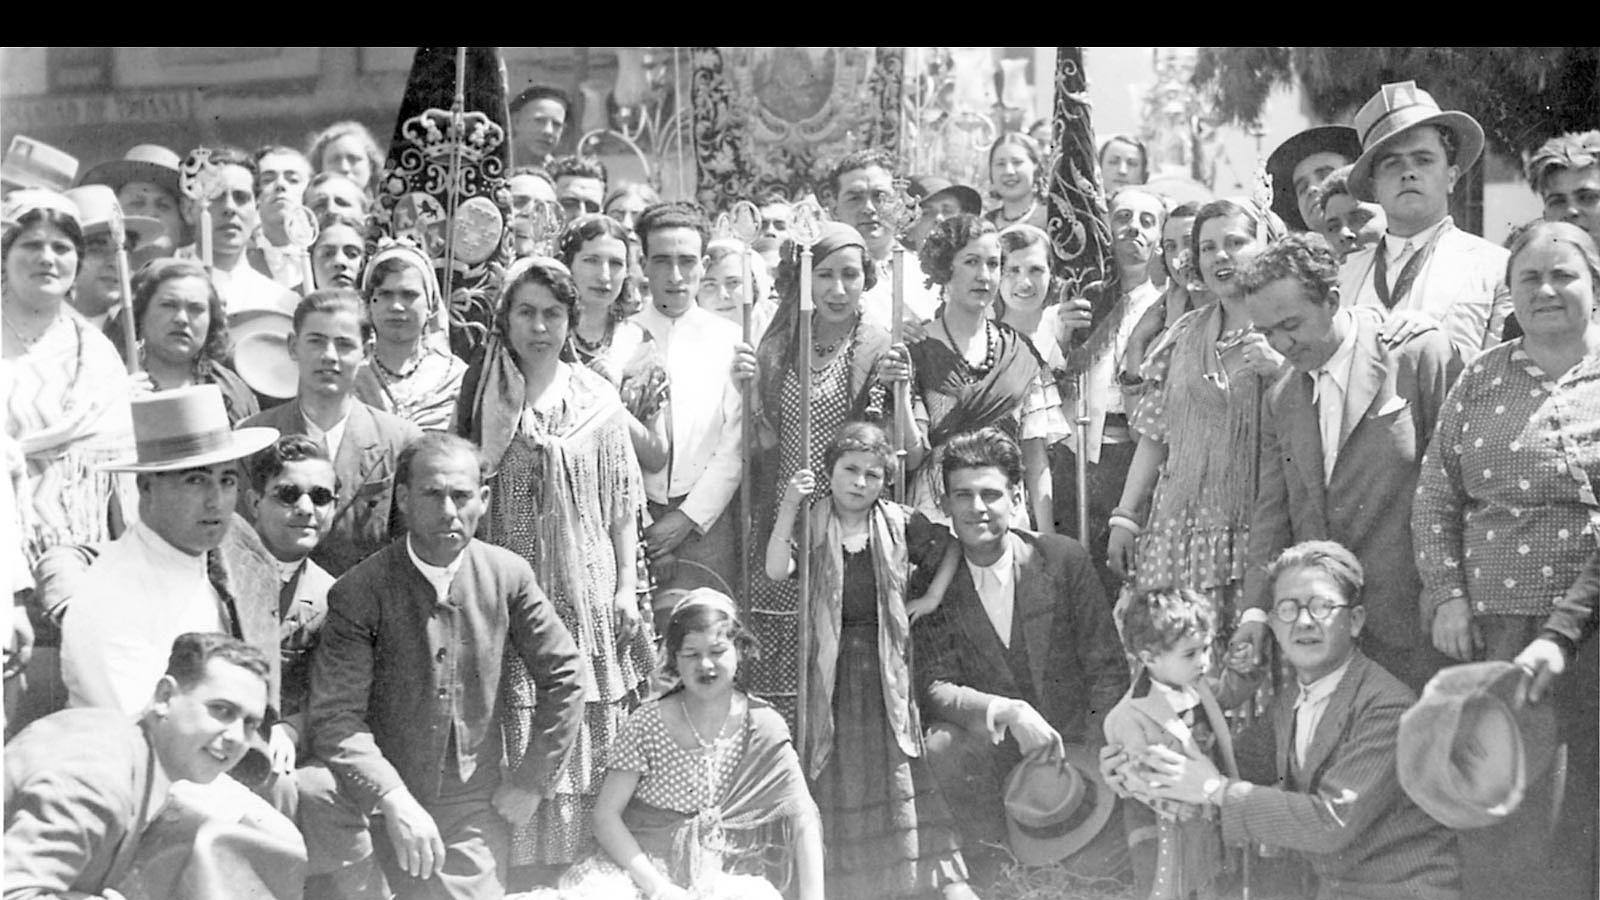 1920: Grupo de romeros de la Hdad. de Triana al salir de oir misa en el Santuario de Almonte.